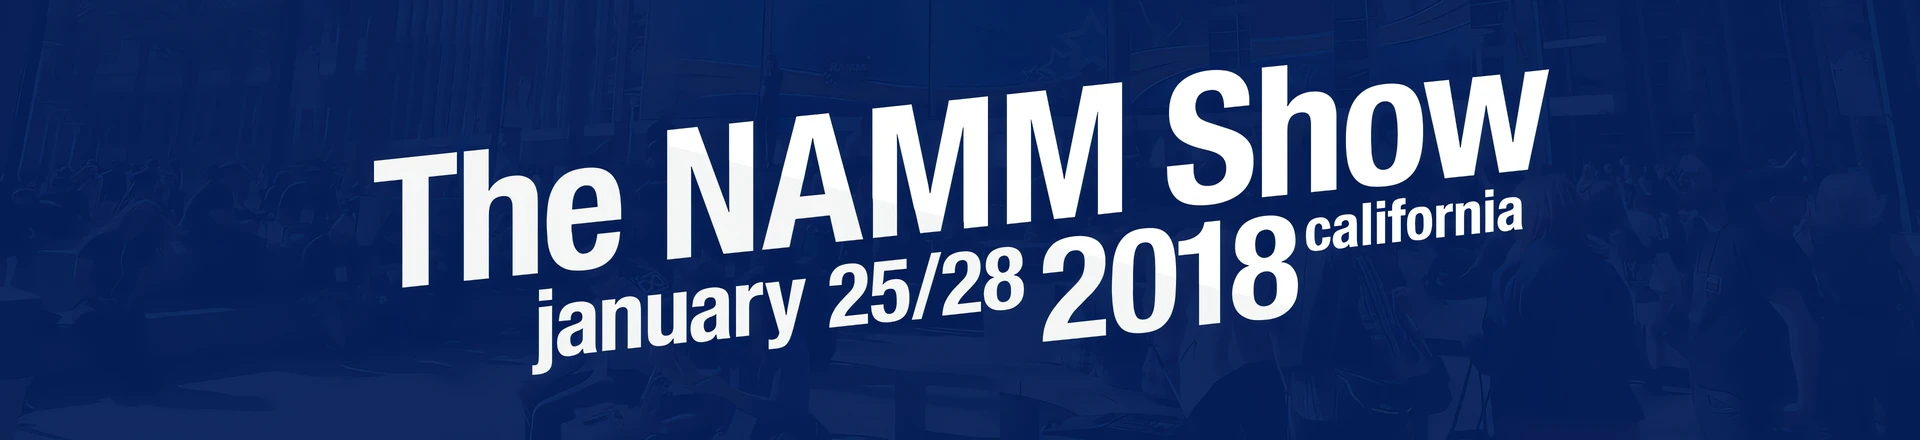 NAMM to święto dla branży muzycznej - zobacz jak było 